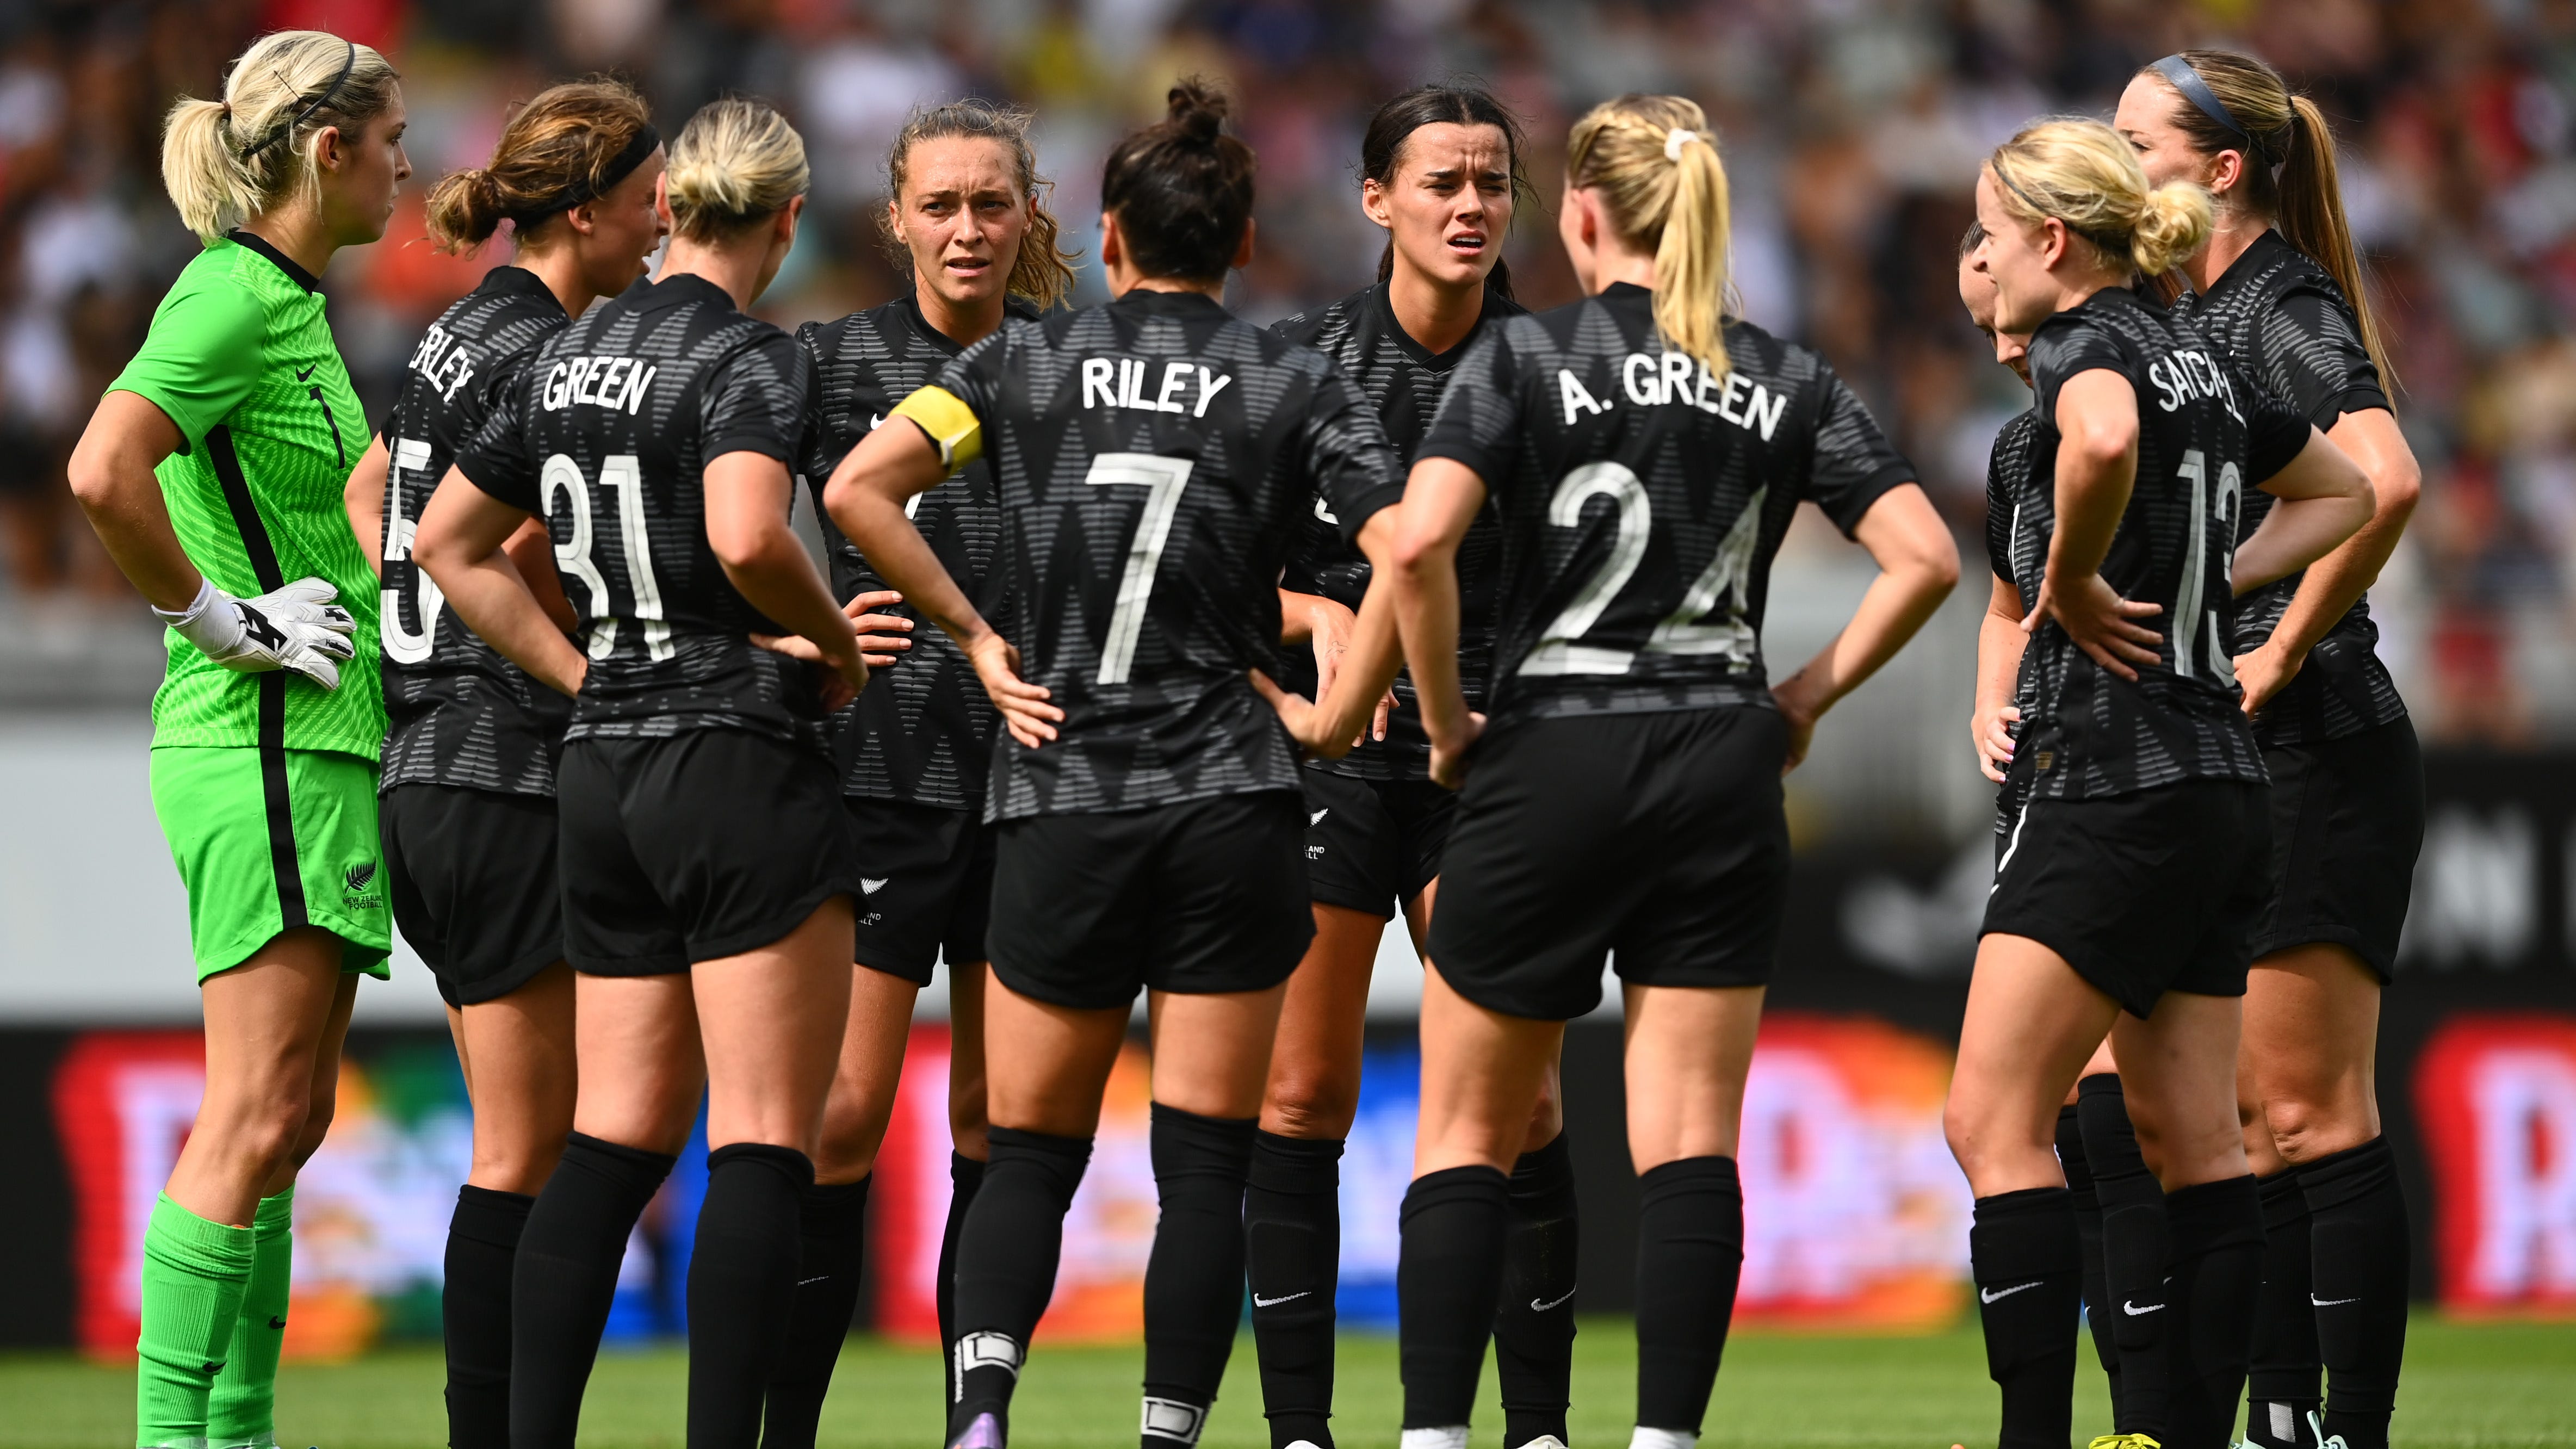 New Zealand women's national team stars' jerseys